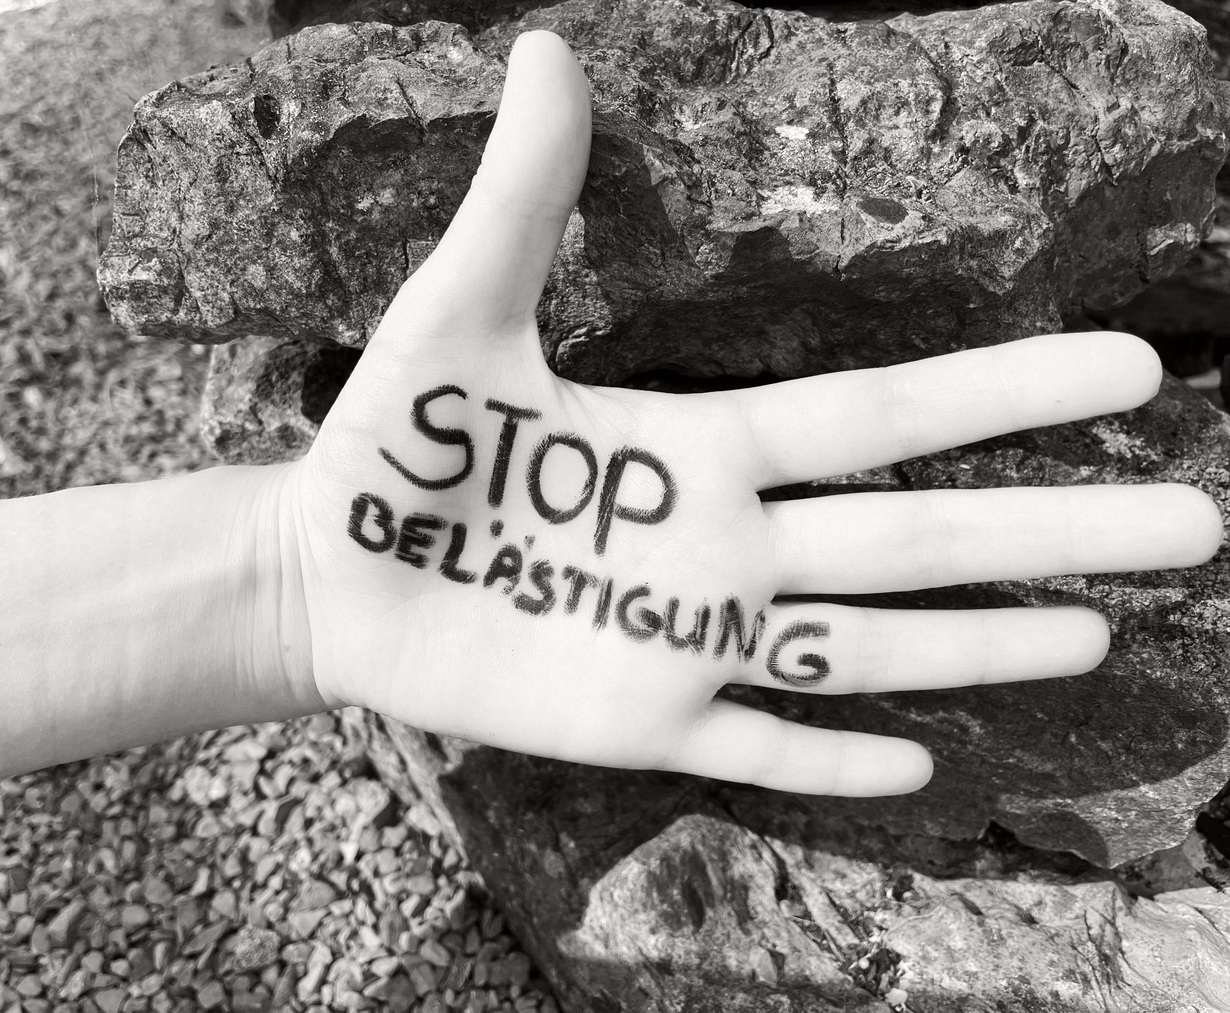 Stop Belästigung